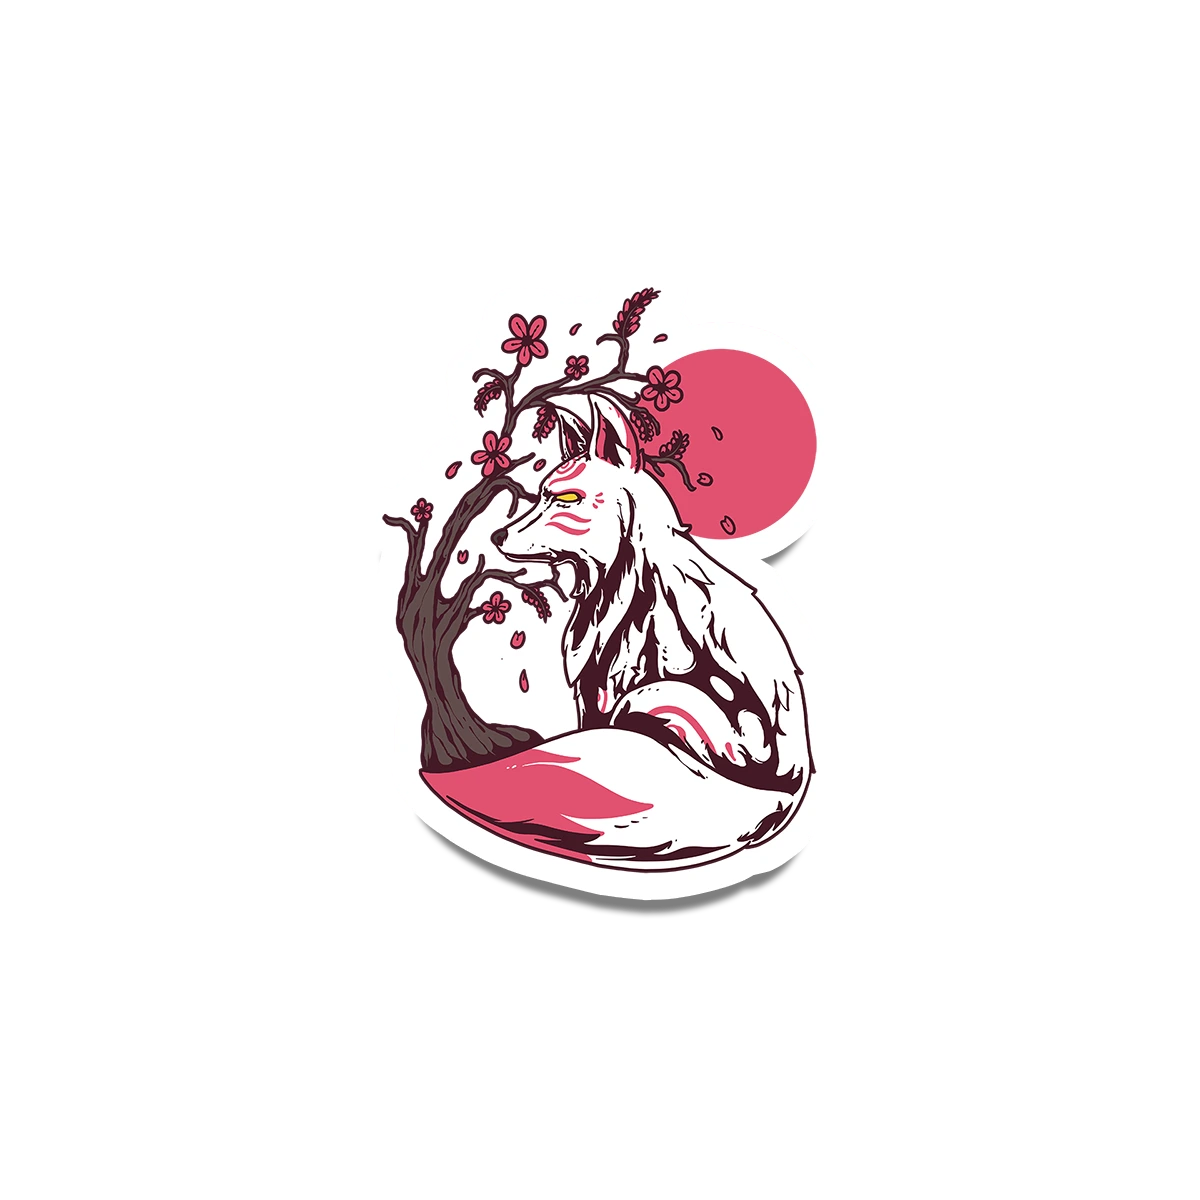 Kitsune Sticker